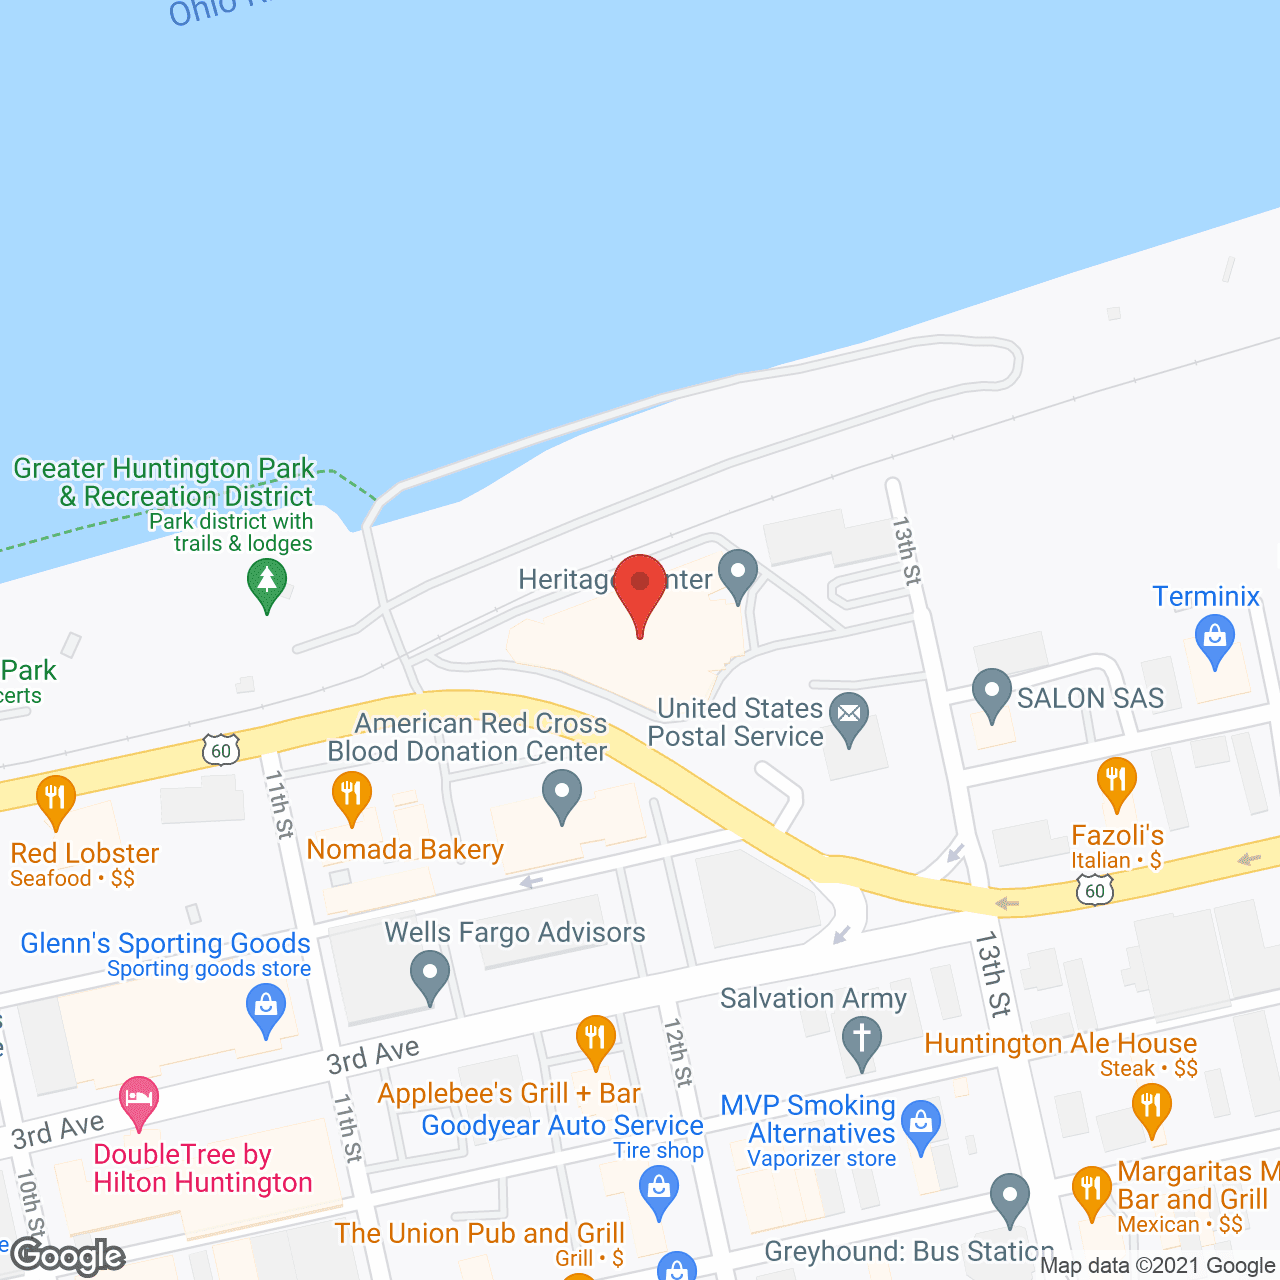 Heritage Center - WV in google map